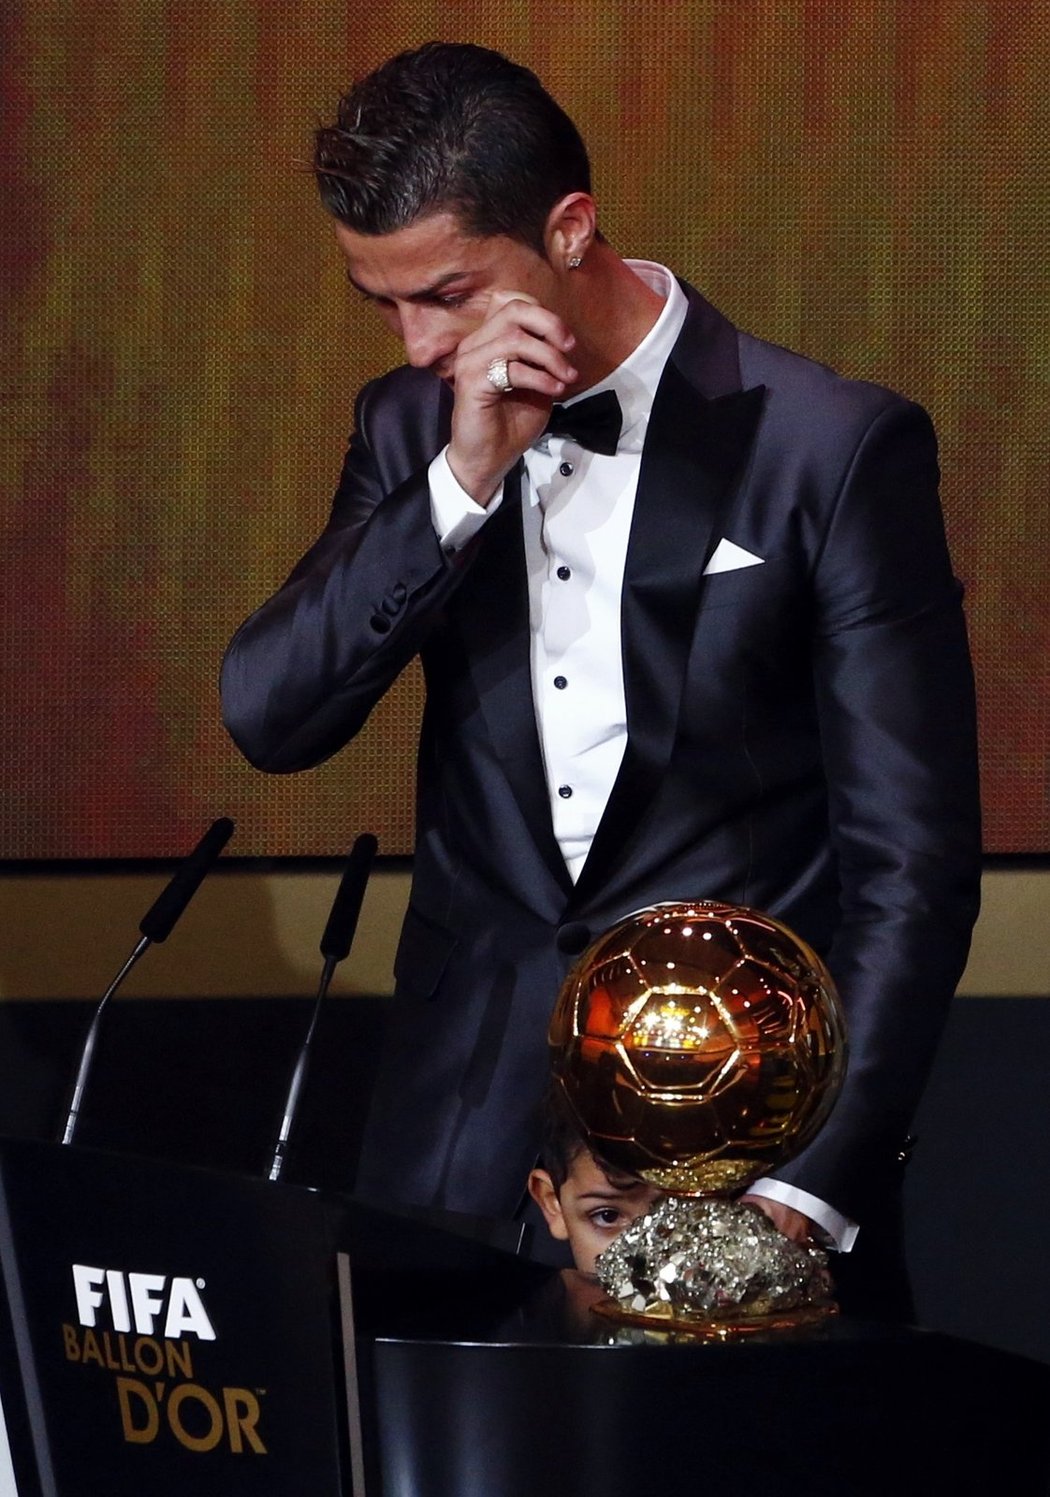 Slzy štěstí. Cristiano Ronaldo získal Zlatý míč pro nejlepšího fotbalistu na světě